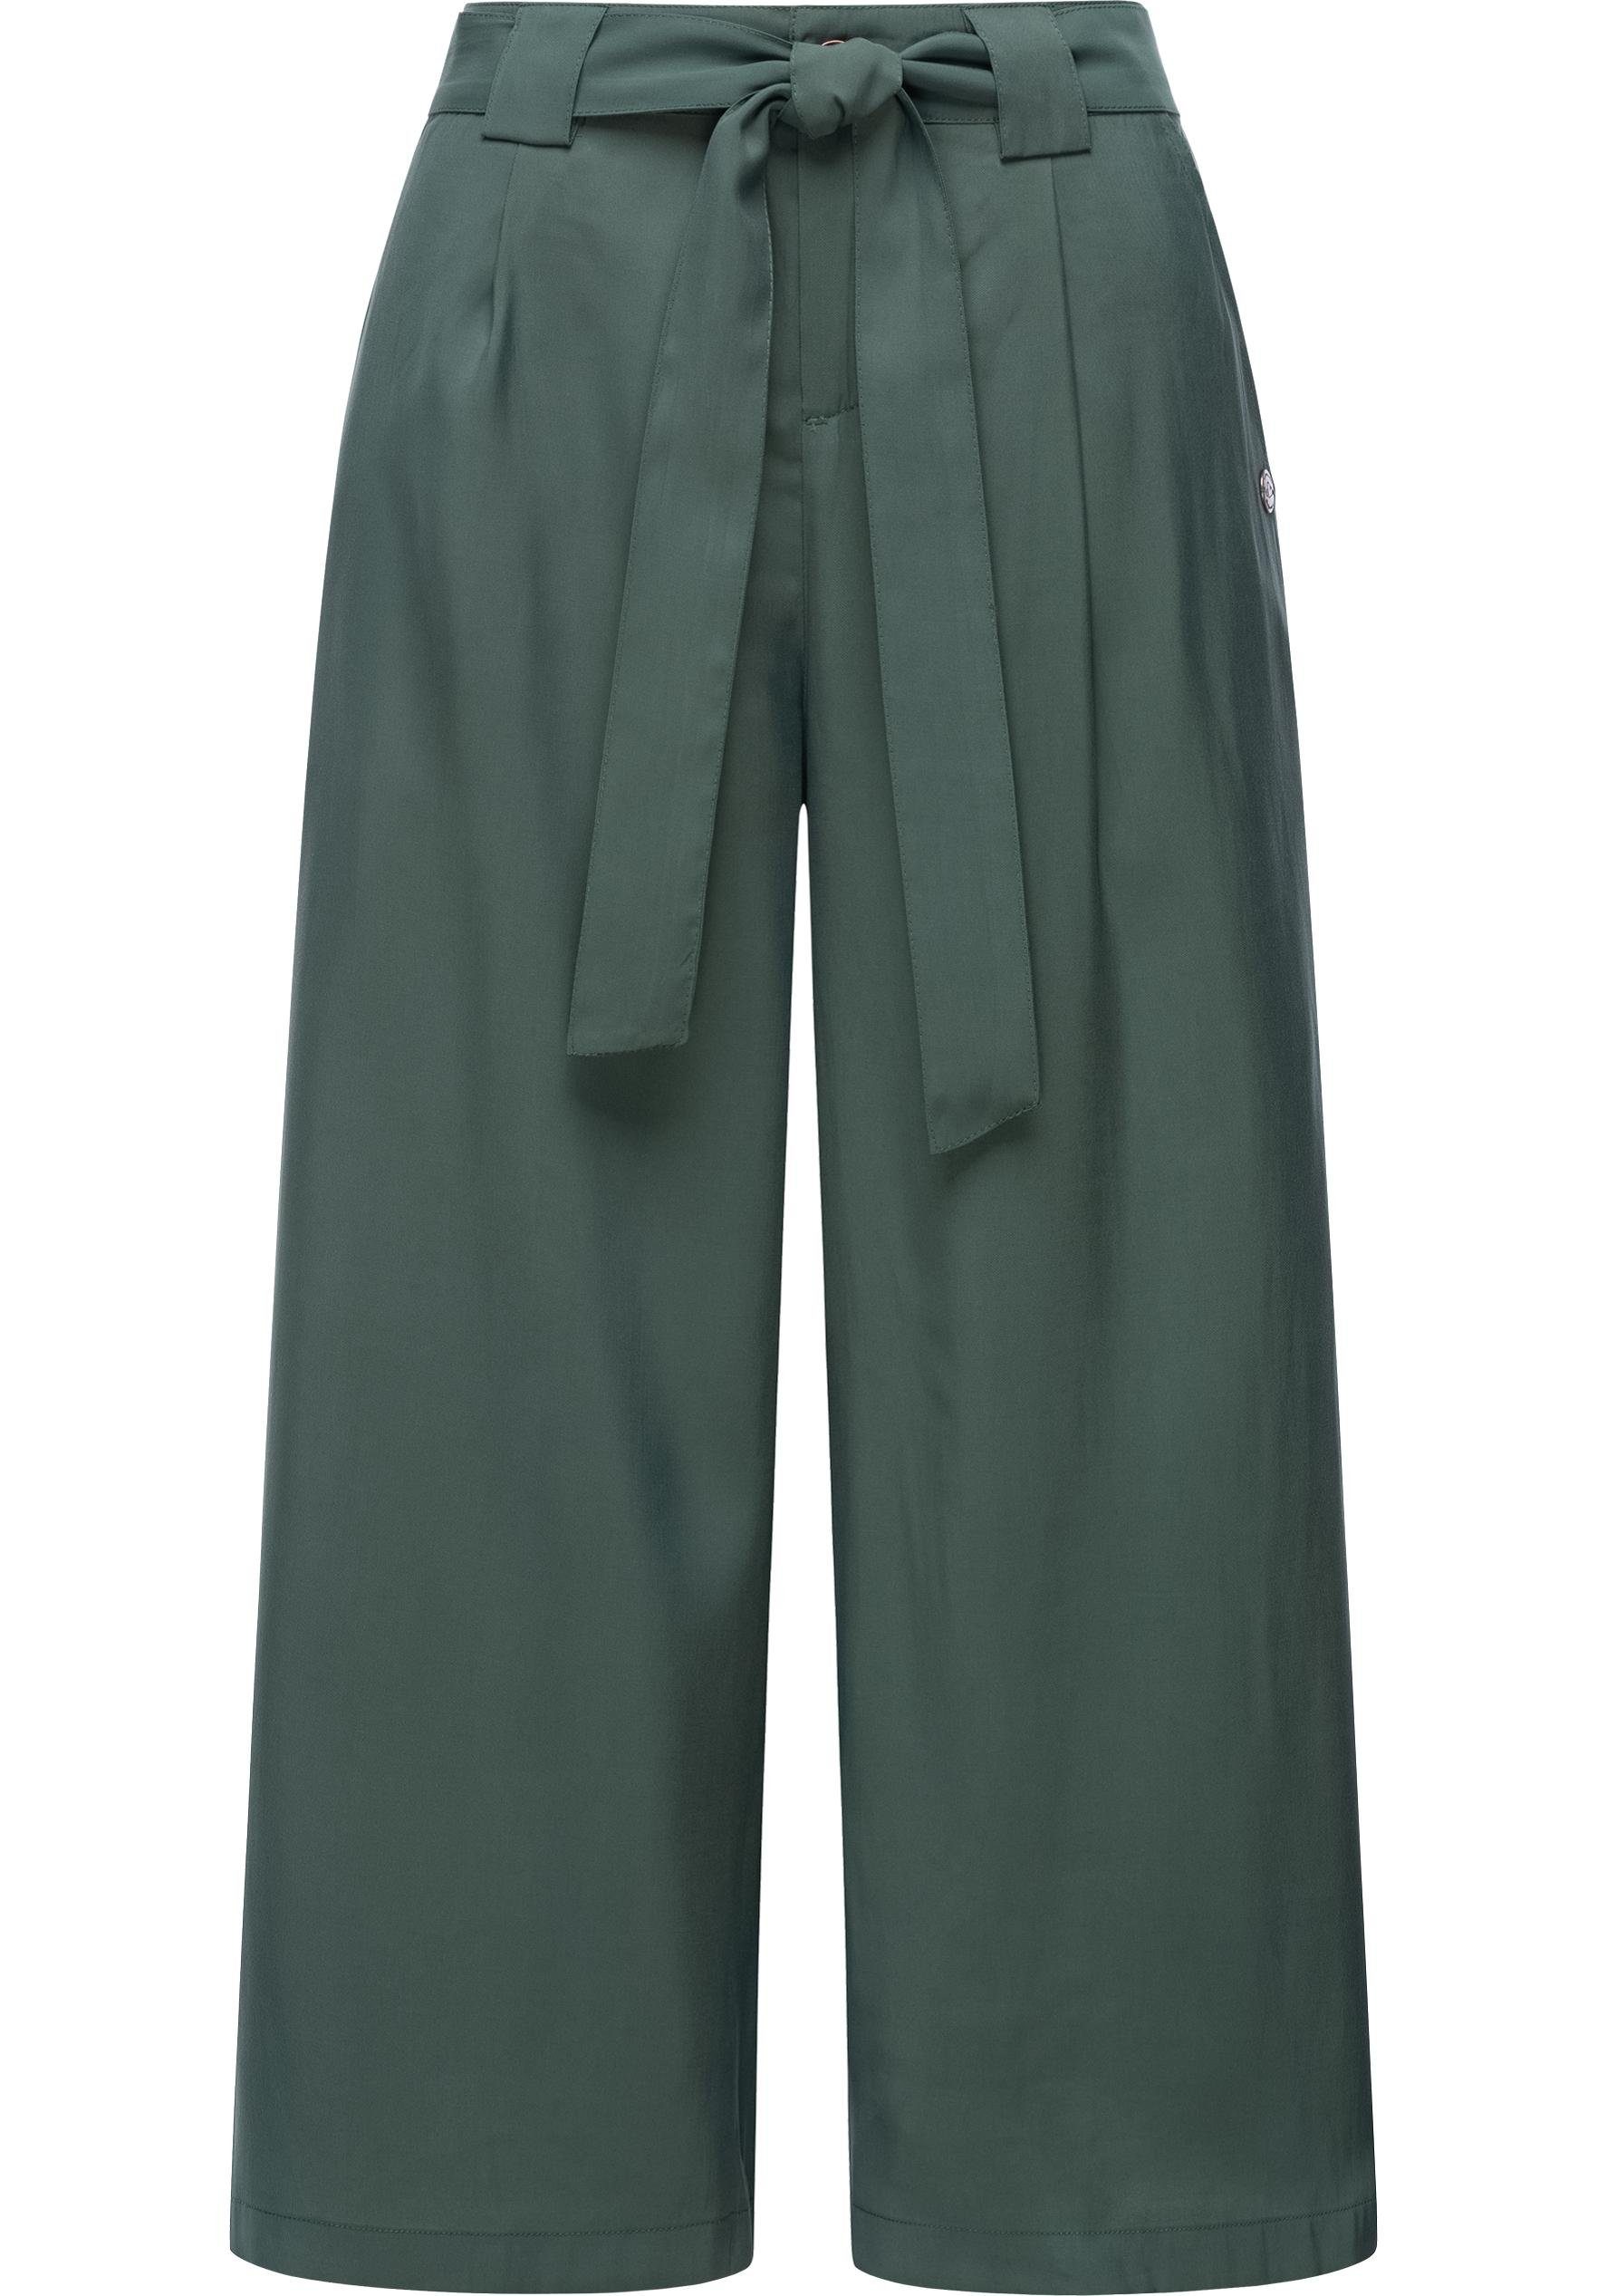 Ragwear Stoffhose Yarai Stylische Culotte Hose mit Gürtel dunkelgrün | Weite Hosen